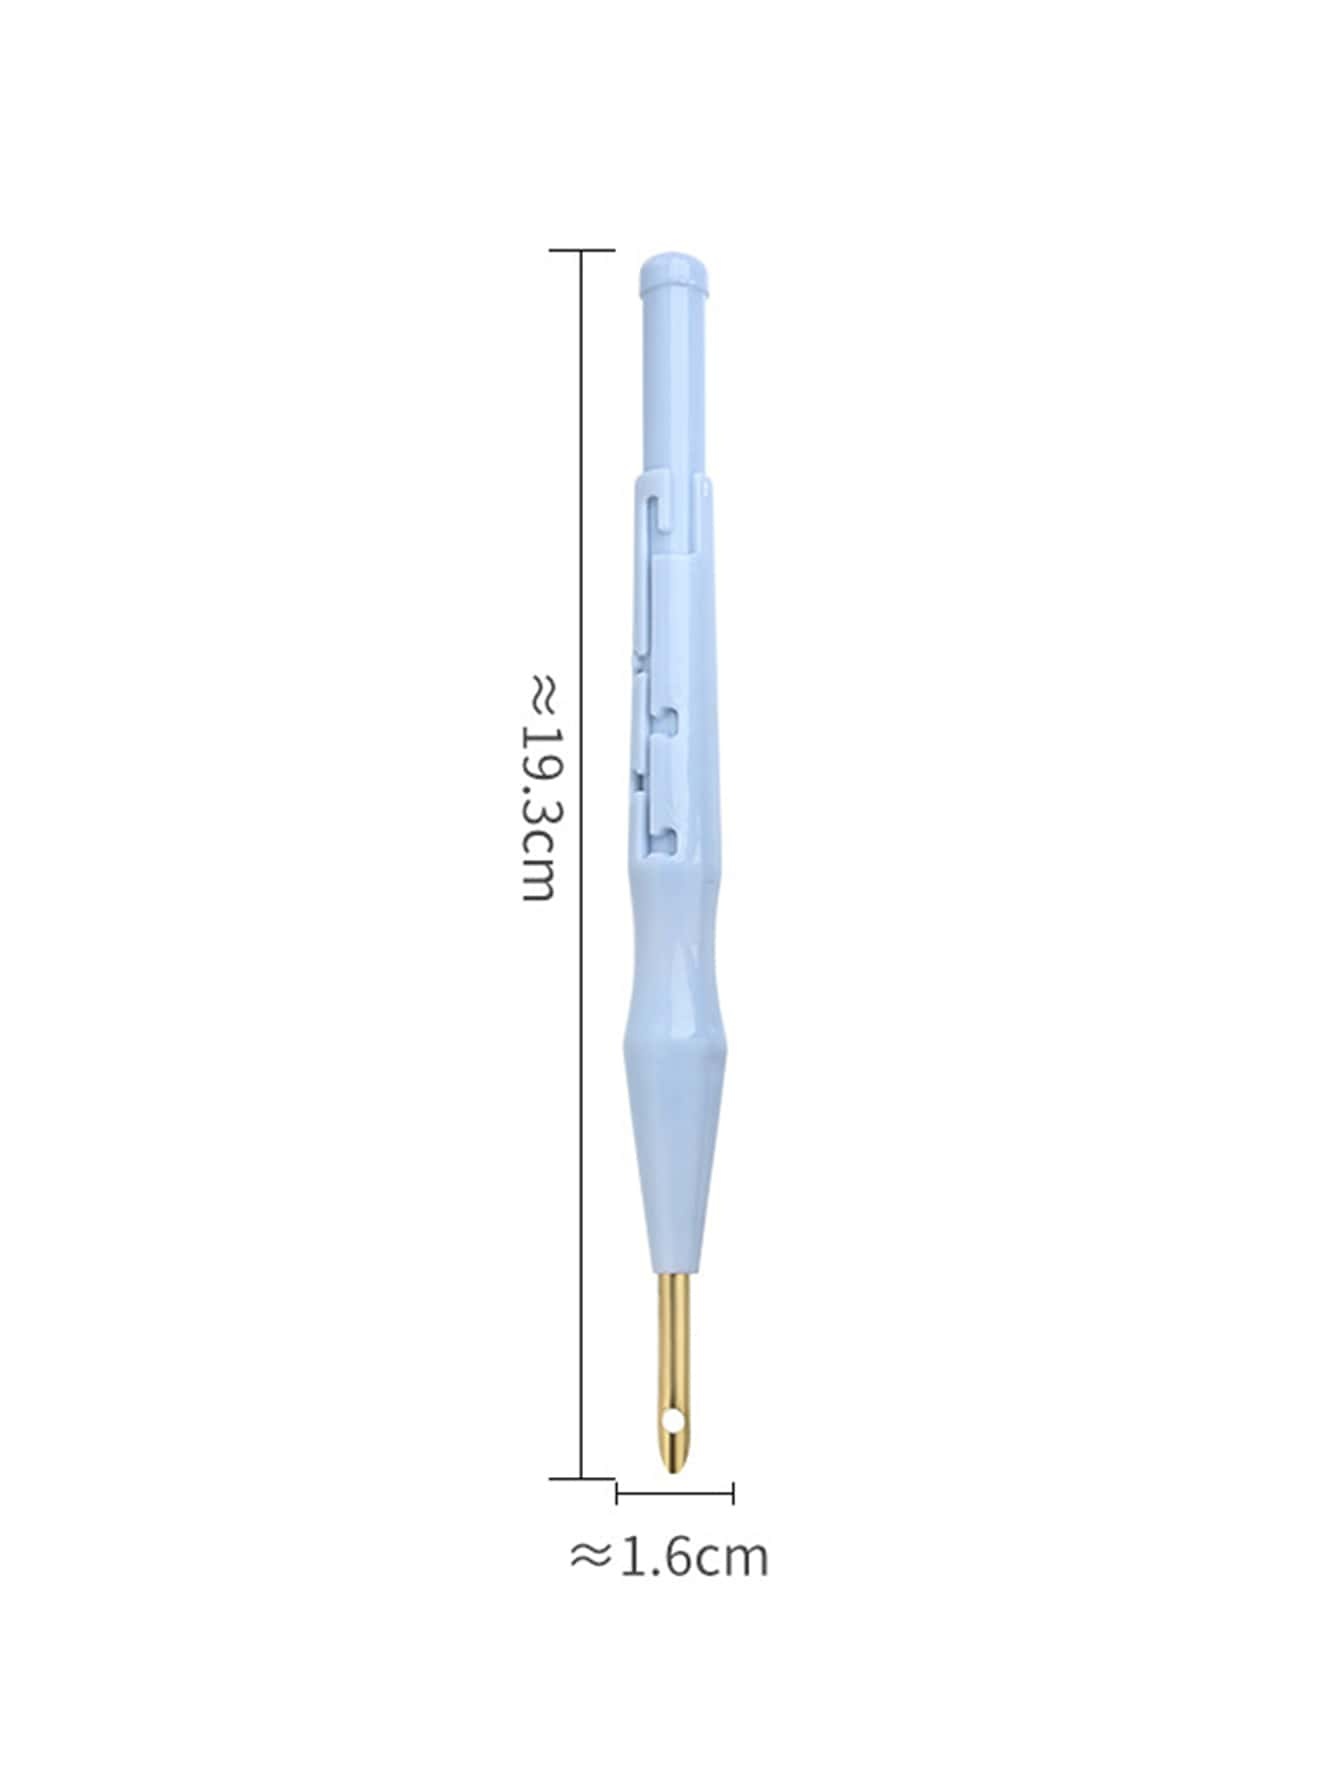 1pc Plastic Felt Needle, Minimalist Blue Needle For DIY